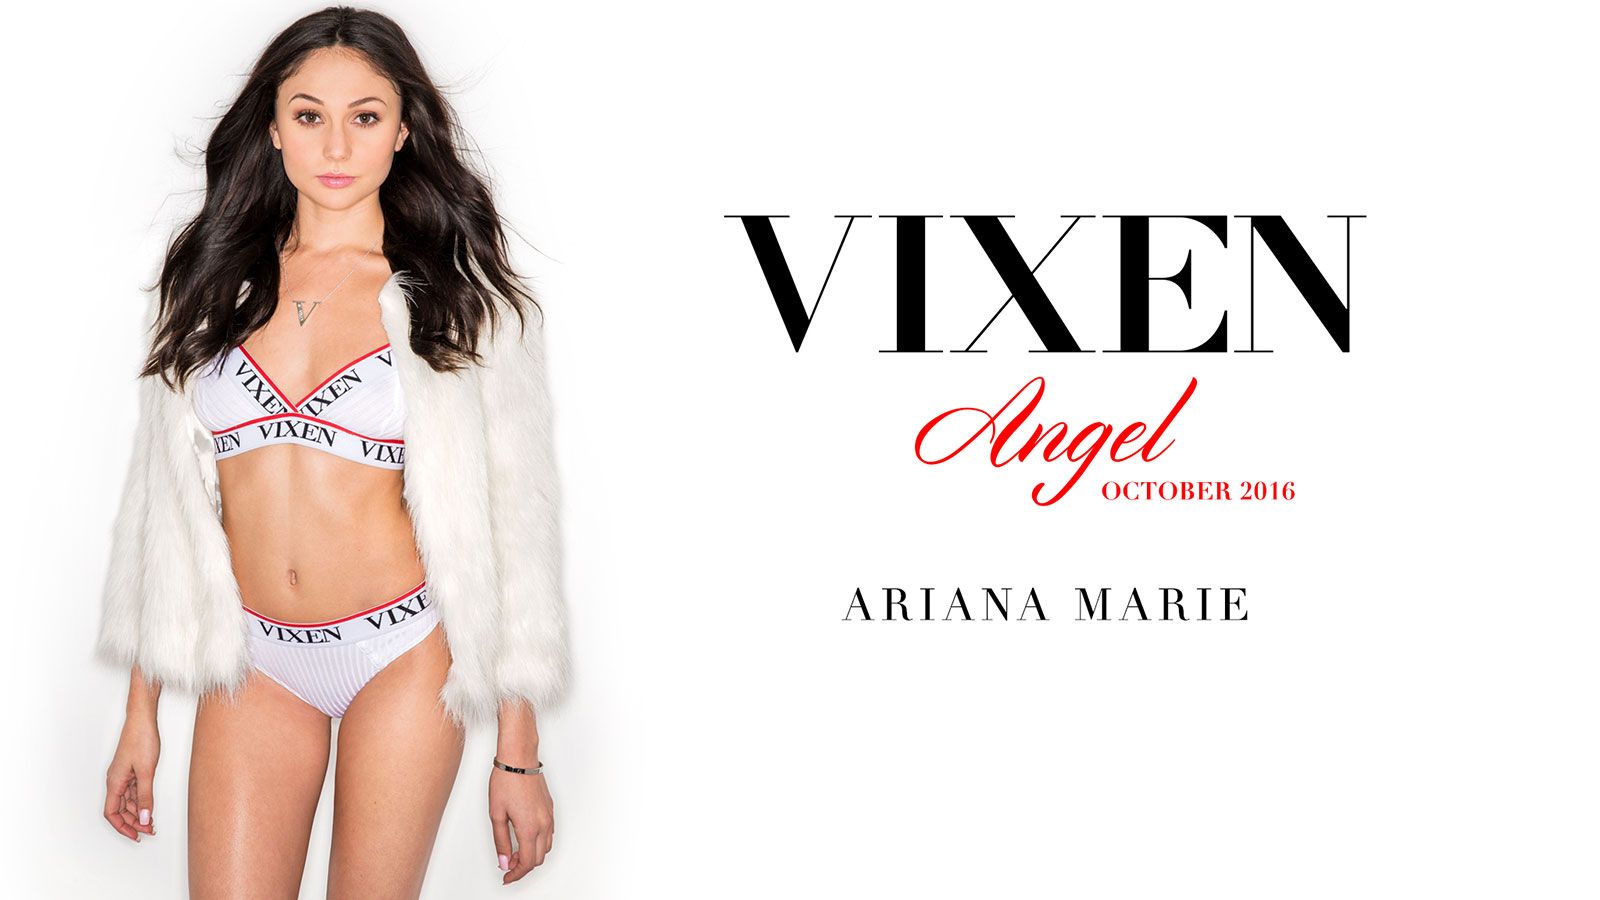 Vixen.com Crowns Ariana Marie As 'Vixen Angel' for October 2016